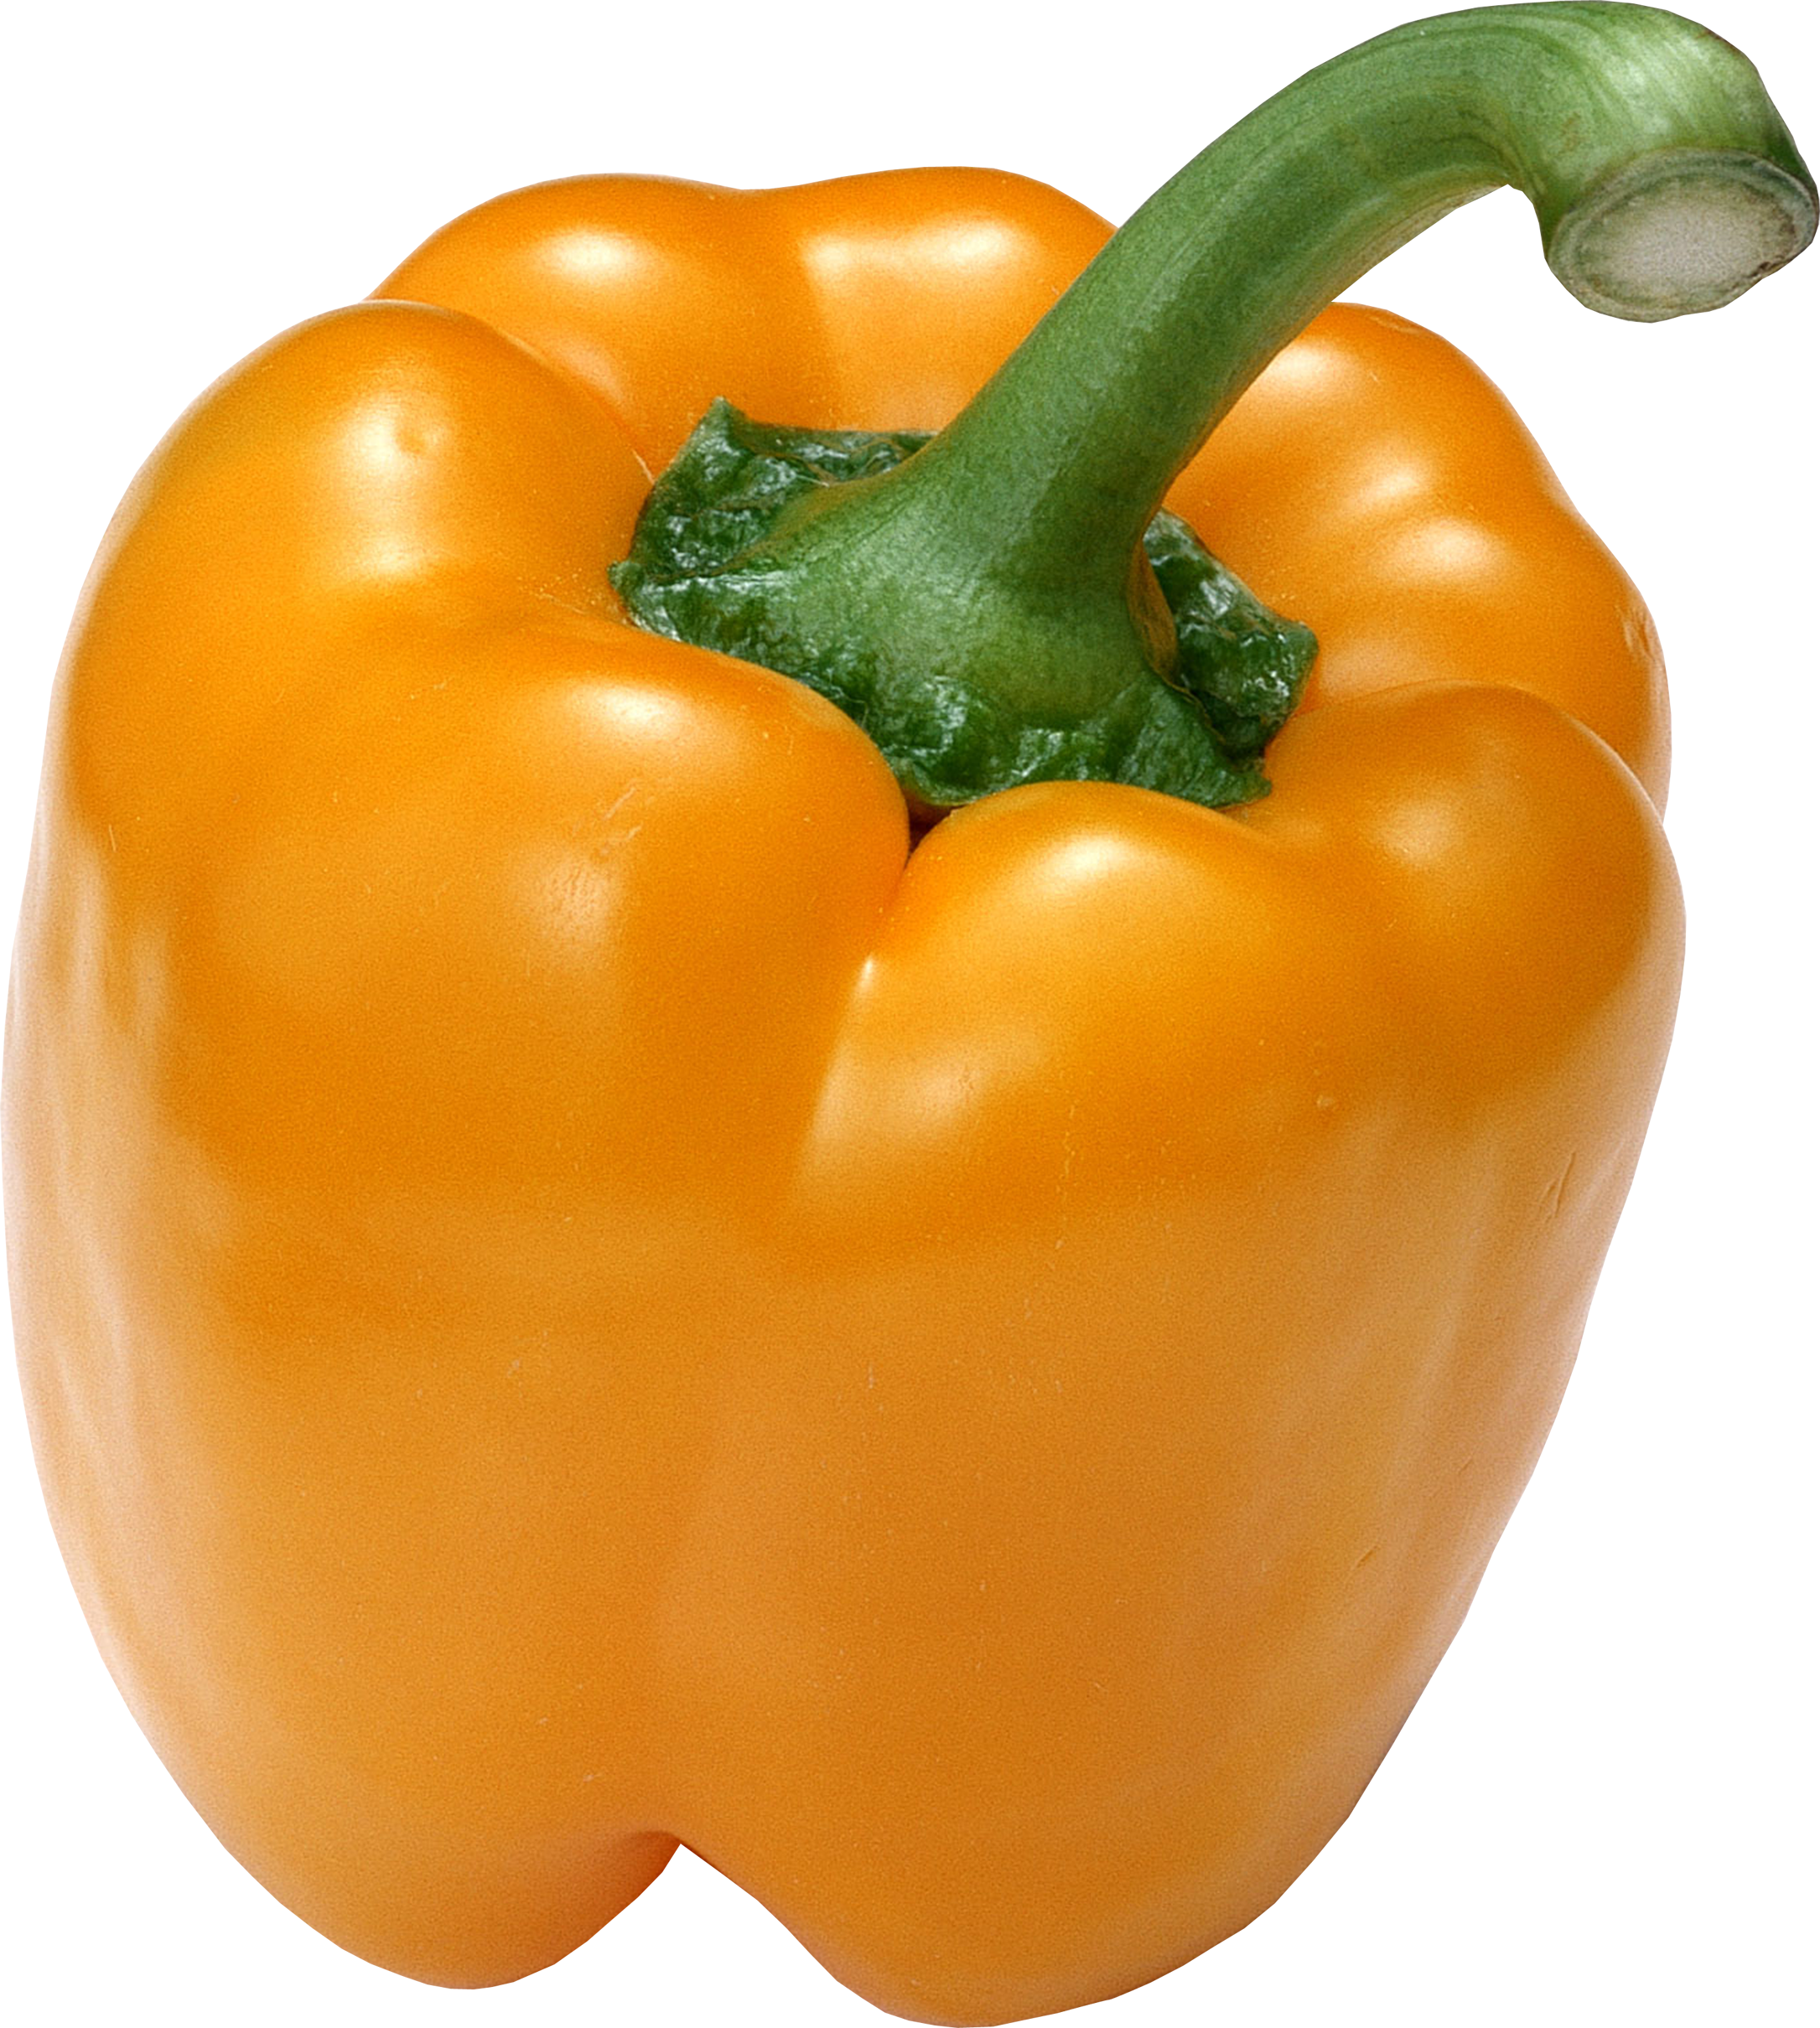 Pepper c. Перец сладкий знатный Толстяк f1. Перец Соланор f1. Овощи перец. Овощи по отдельности.